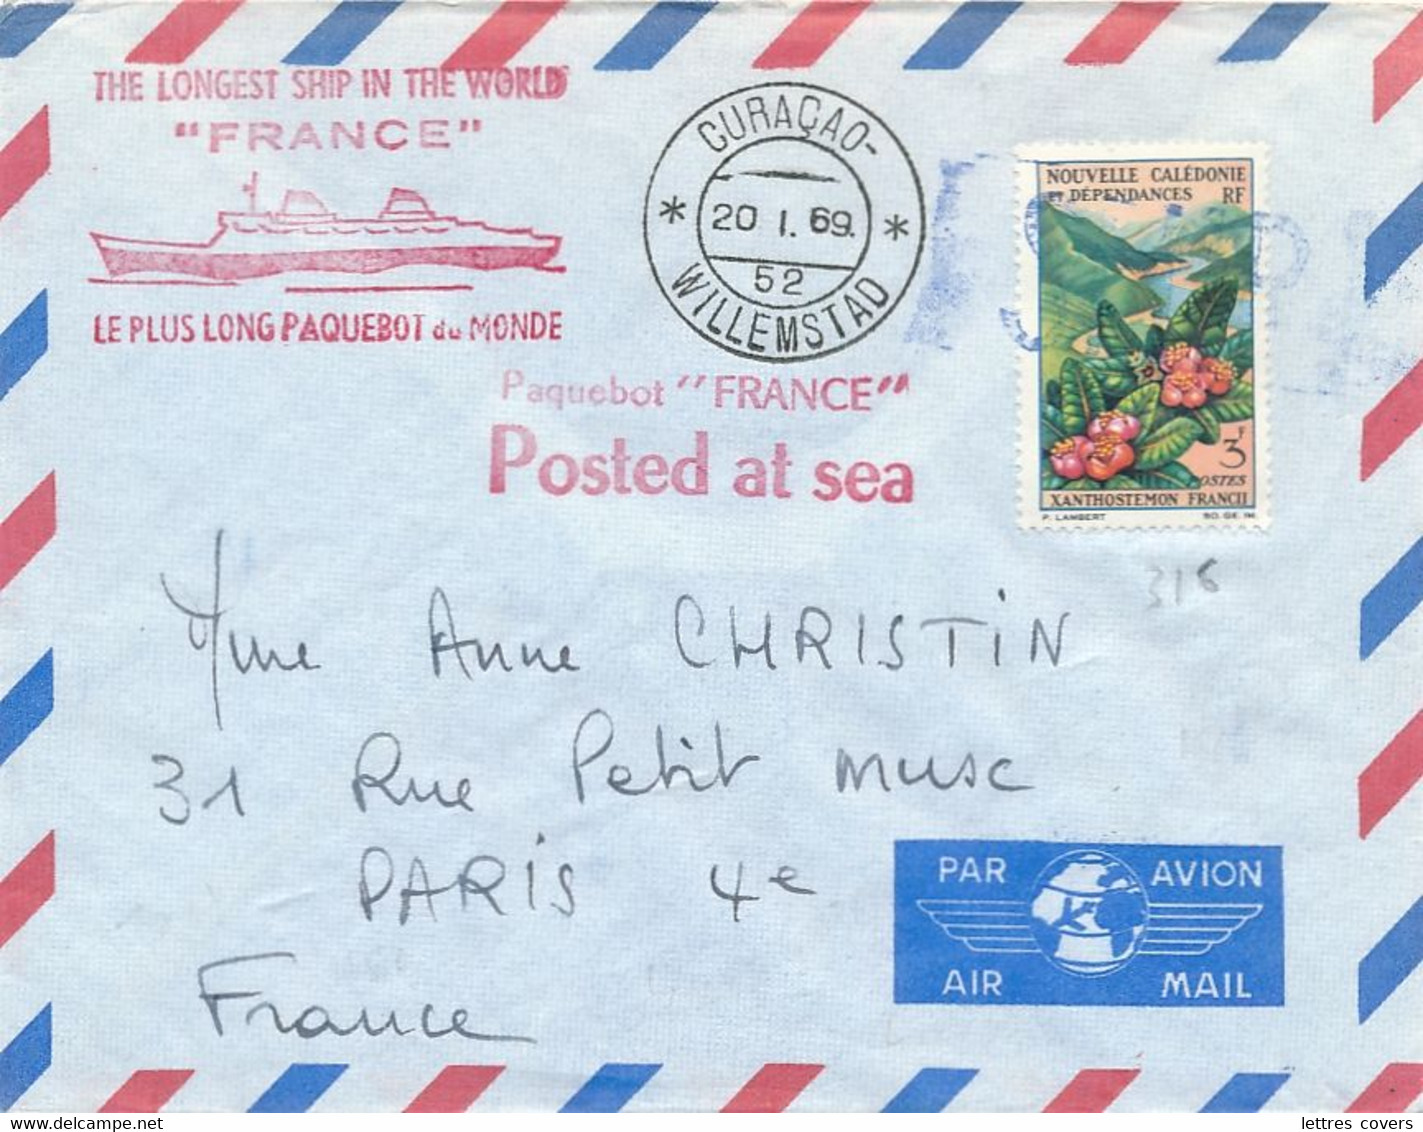 Nouvelle Calédonie 3f + CàD " CURAÇAO WILLEMSTAD 20/1/69 " Lettre Postée à Bord Paquebot " FRANCE " Seapost Maritime - Lettres & Documents